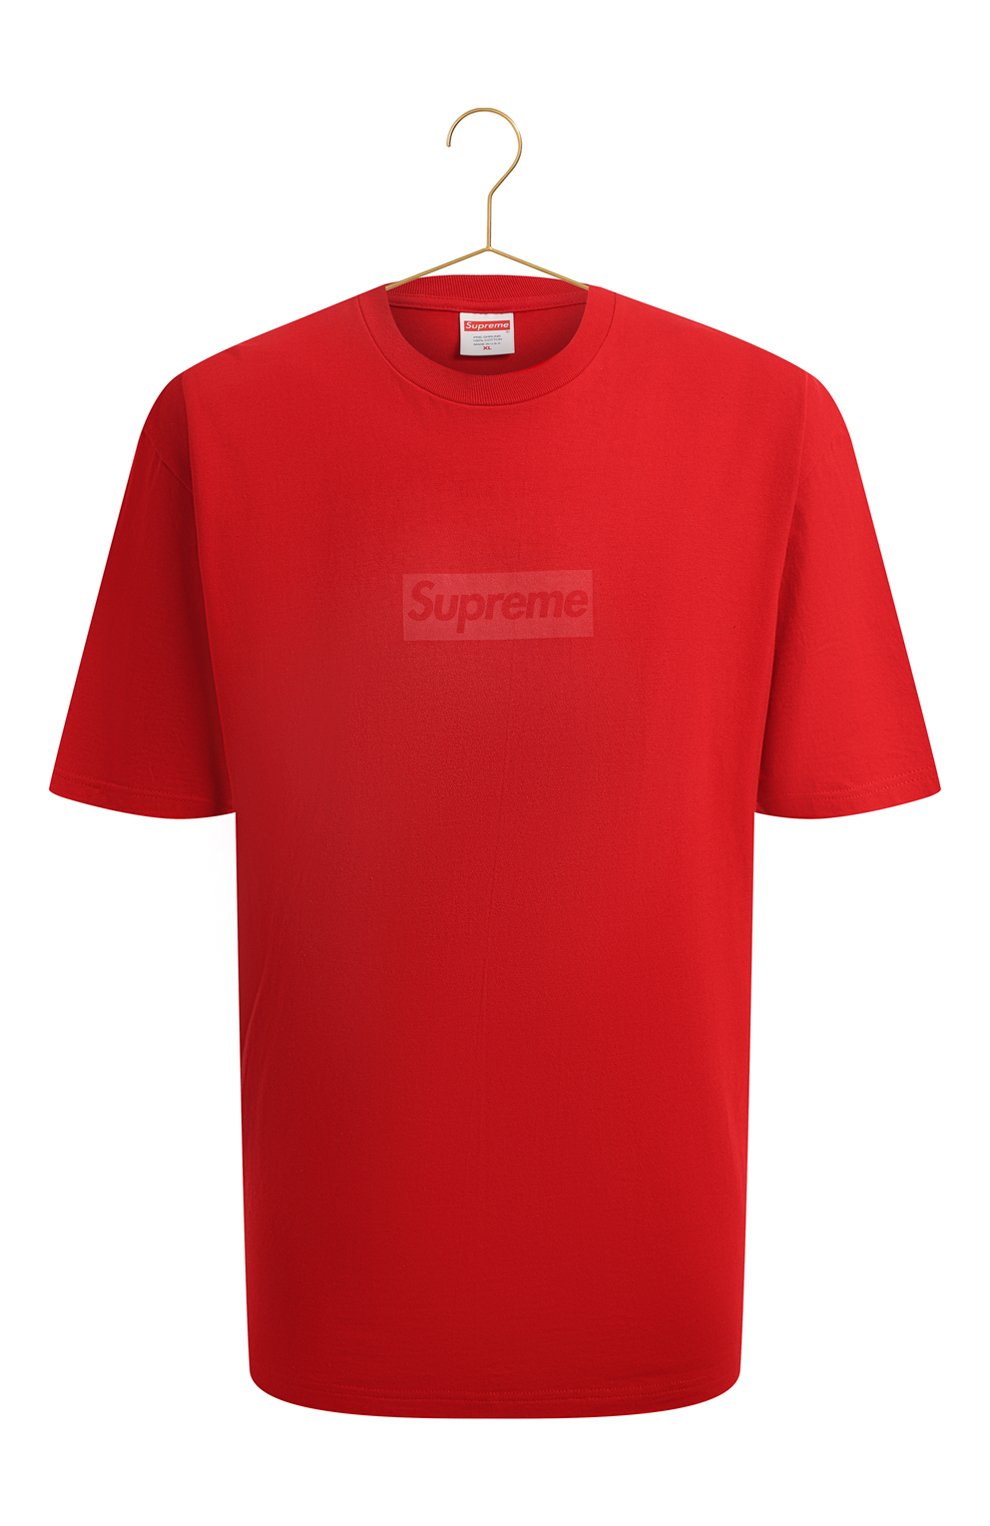 Хлопковая футболка | Supreme | Красный - 1